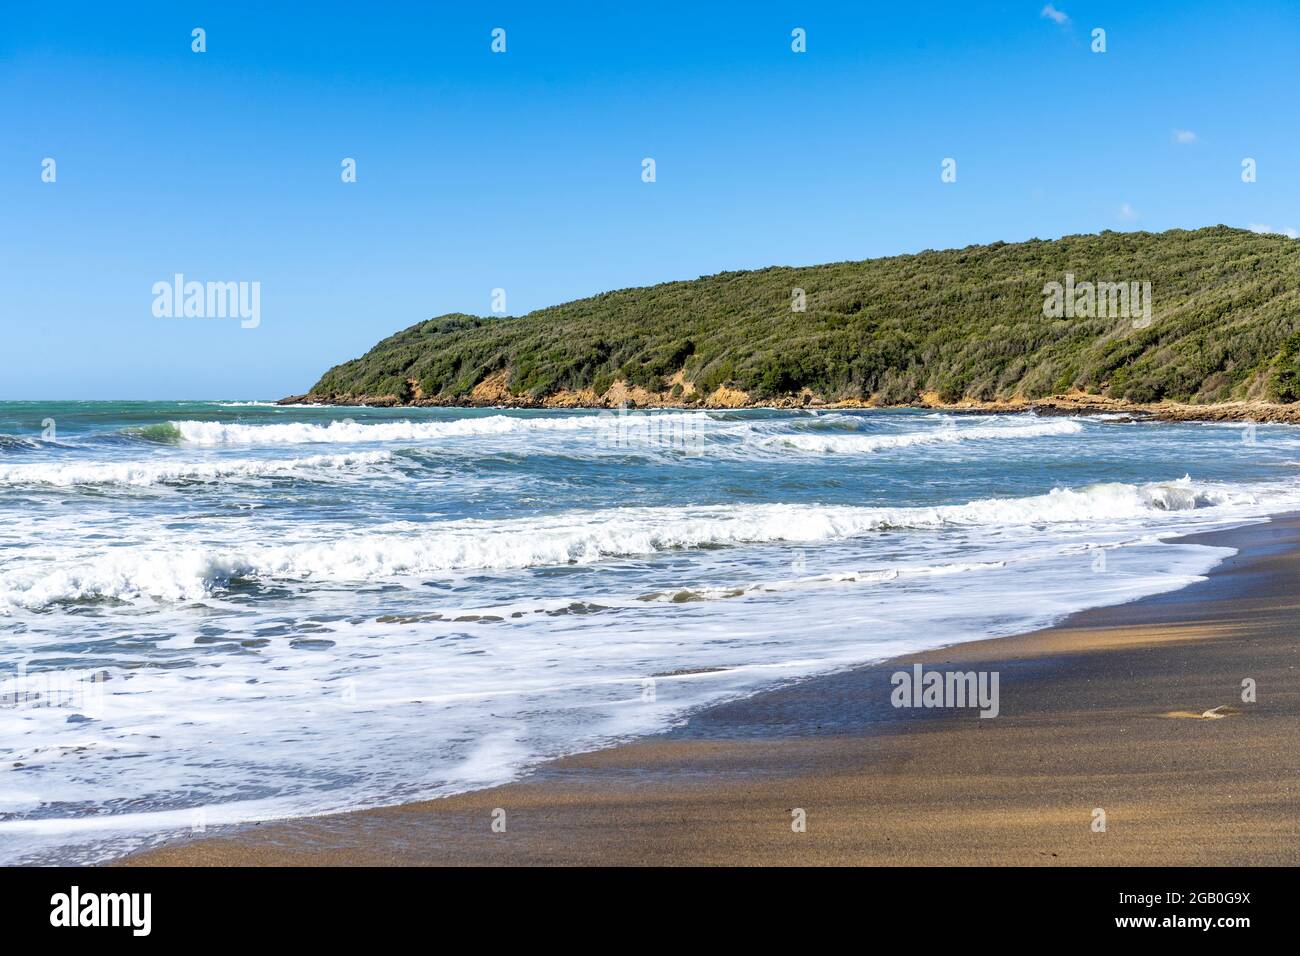 La spiaggia sabbiosa del Golfo di Baratti, nel comune di Piombino, lungo la Costa degli Etruschi, provincia di Livorno, Toscana, Italia Foto Stock